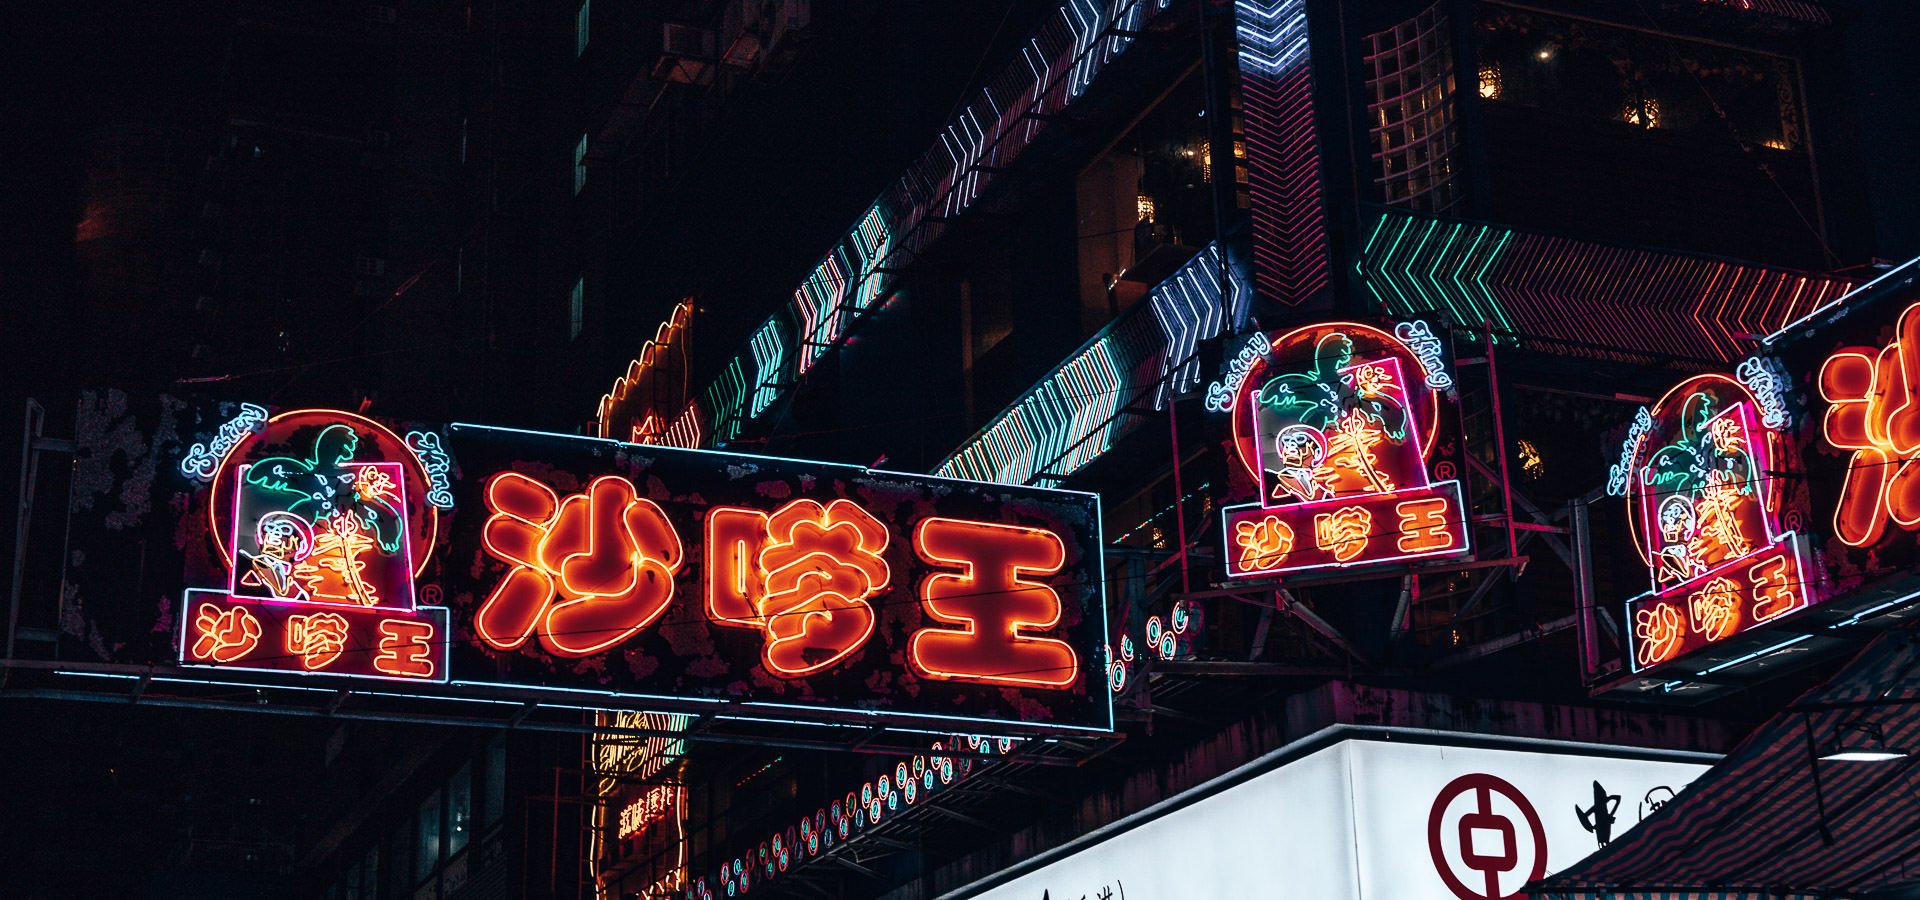 Under Neon Lights In Mong Kok, Hong Kong | hiking reinebringen 7